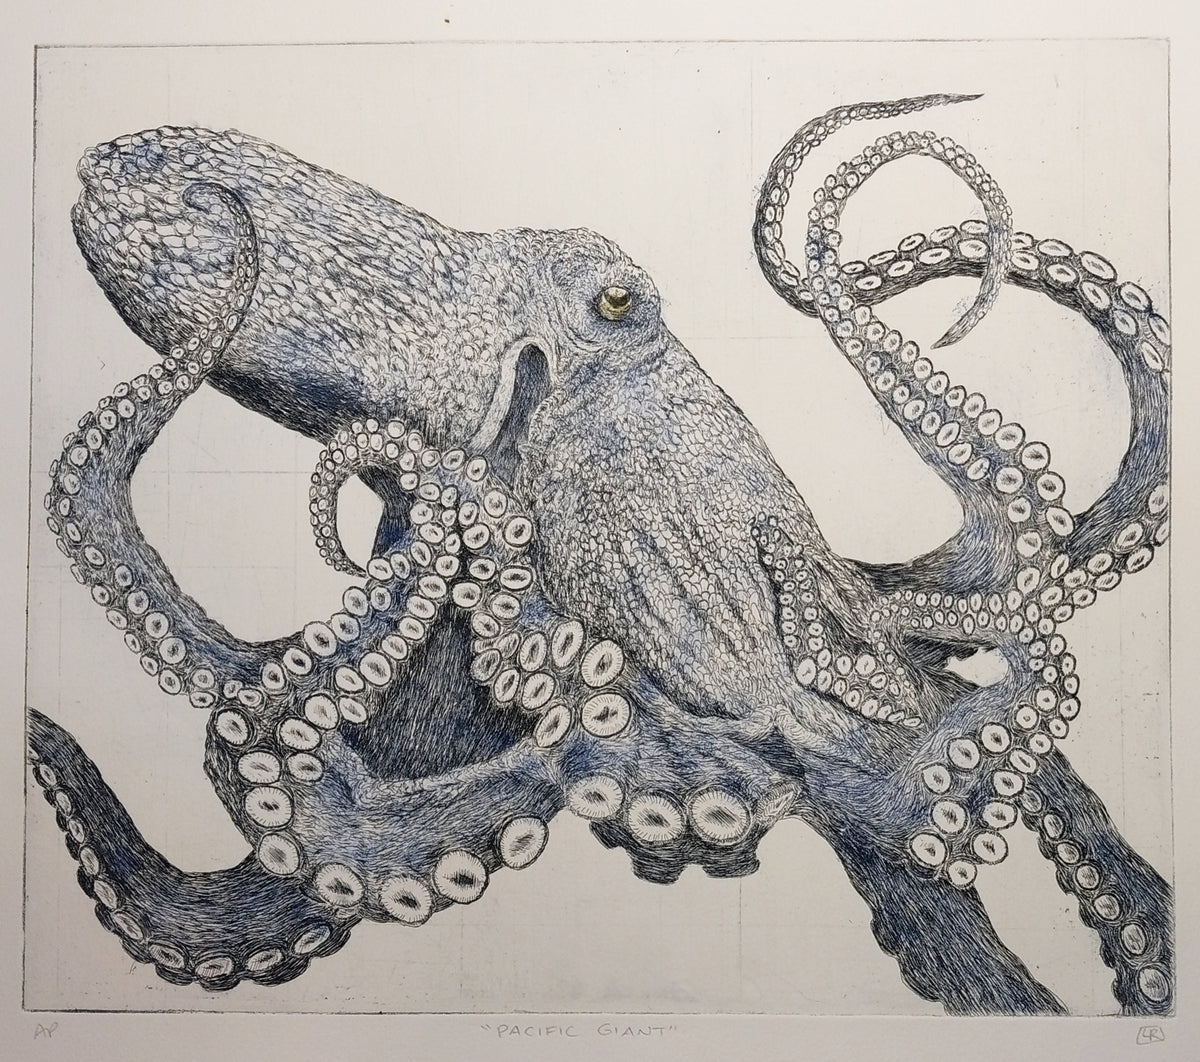 Pacific Giant Octopus - Blue a la poupée version (one of a kind)